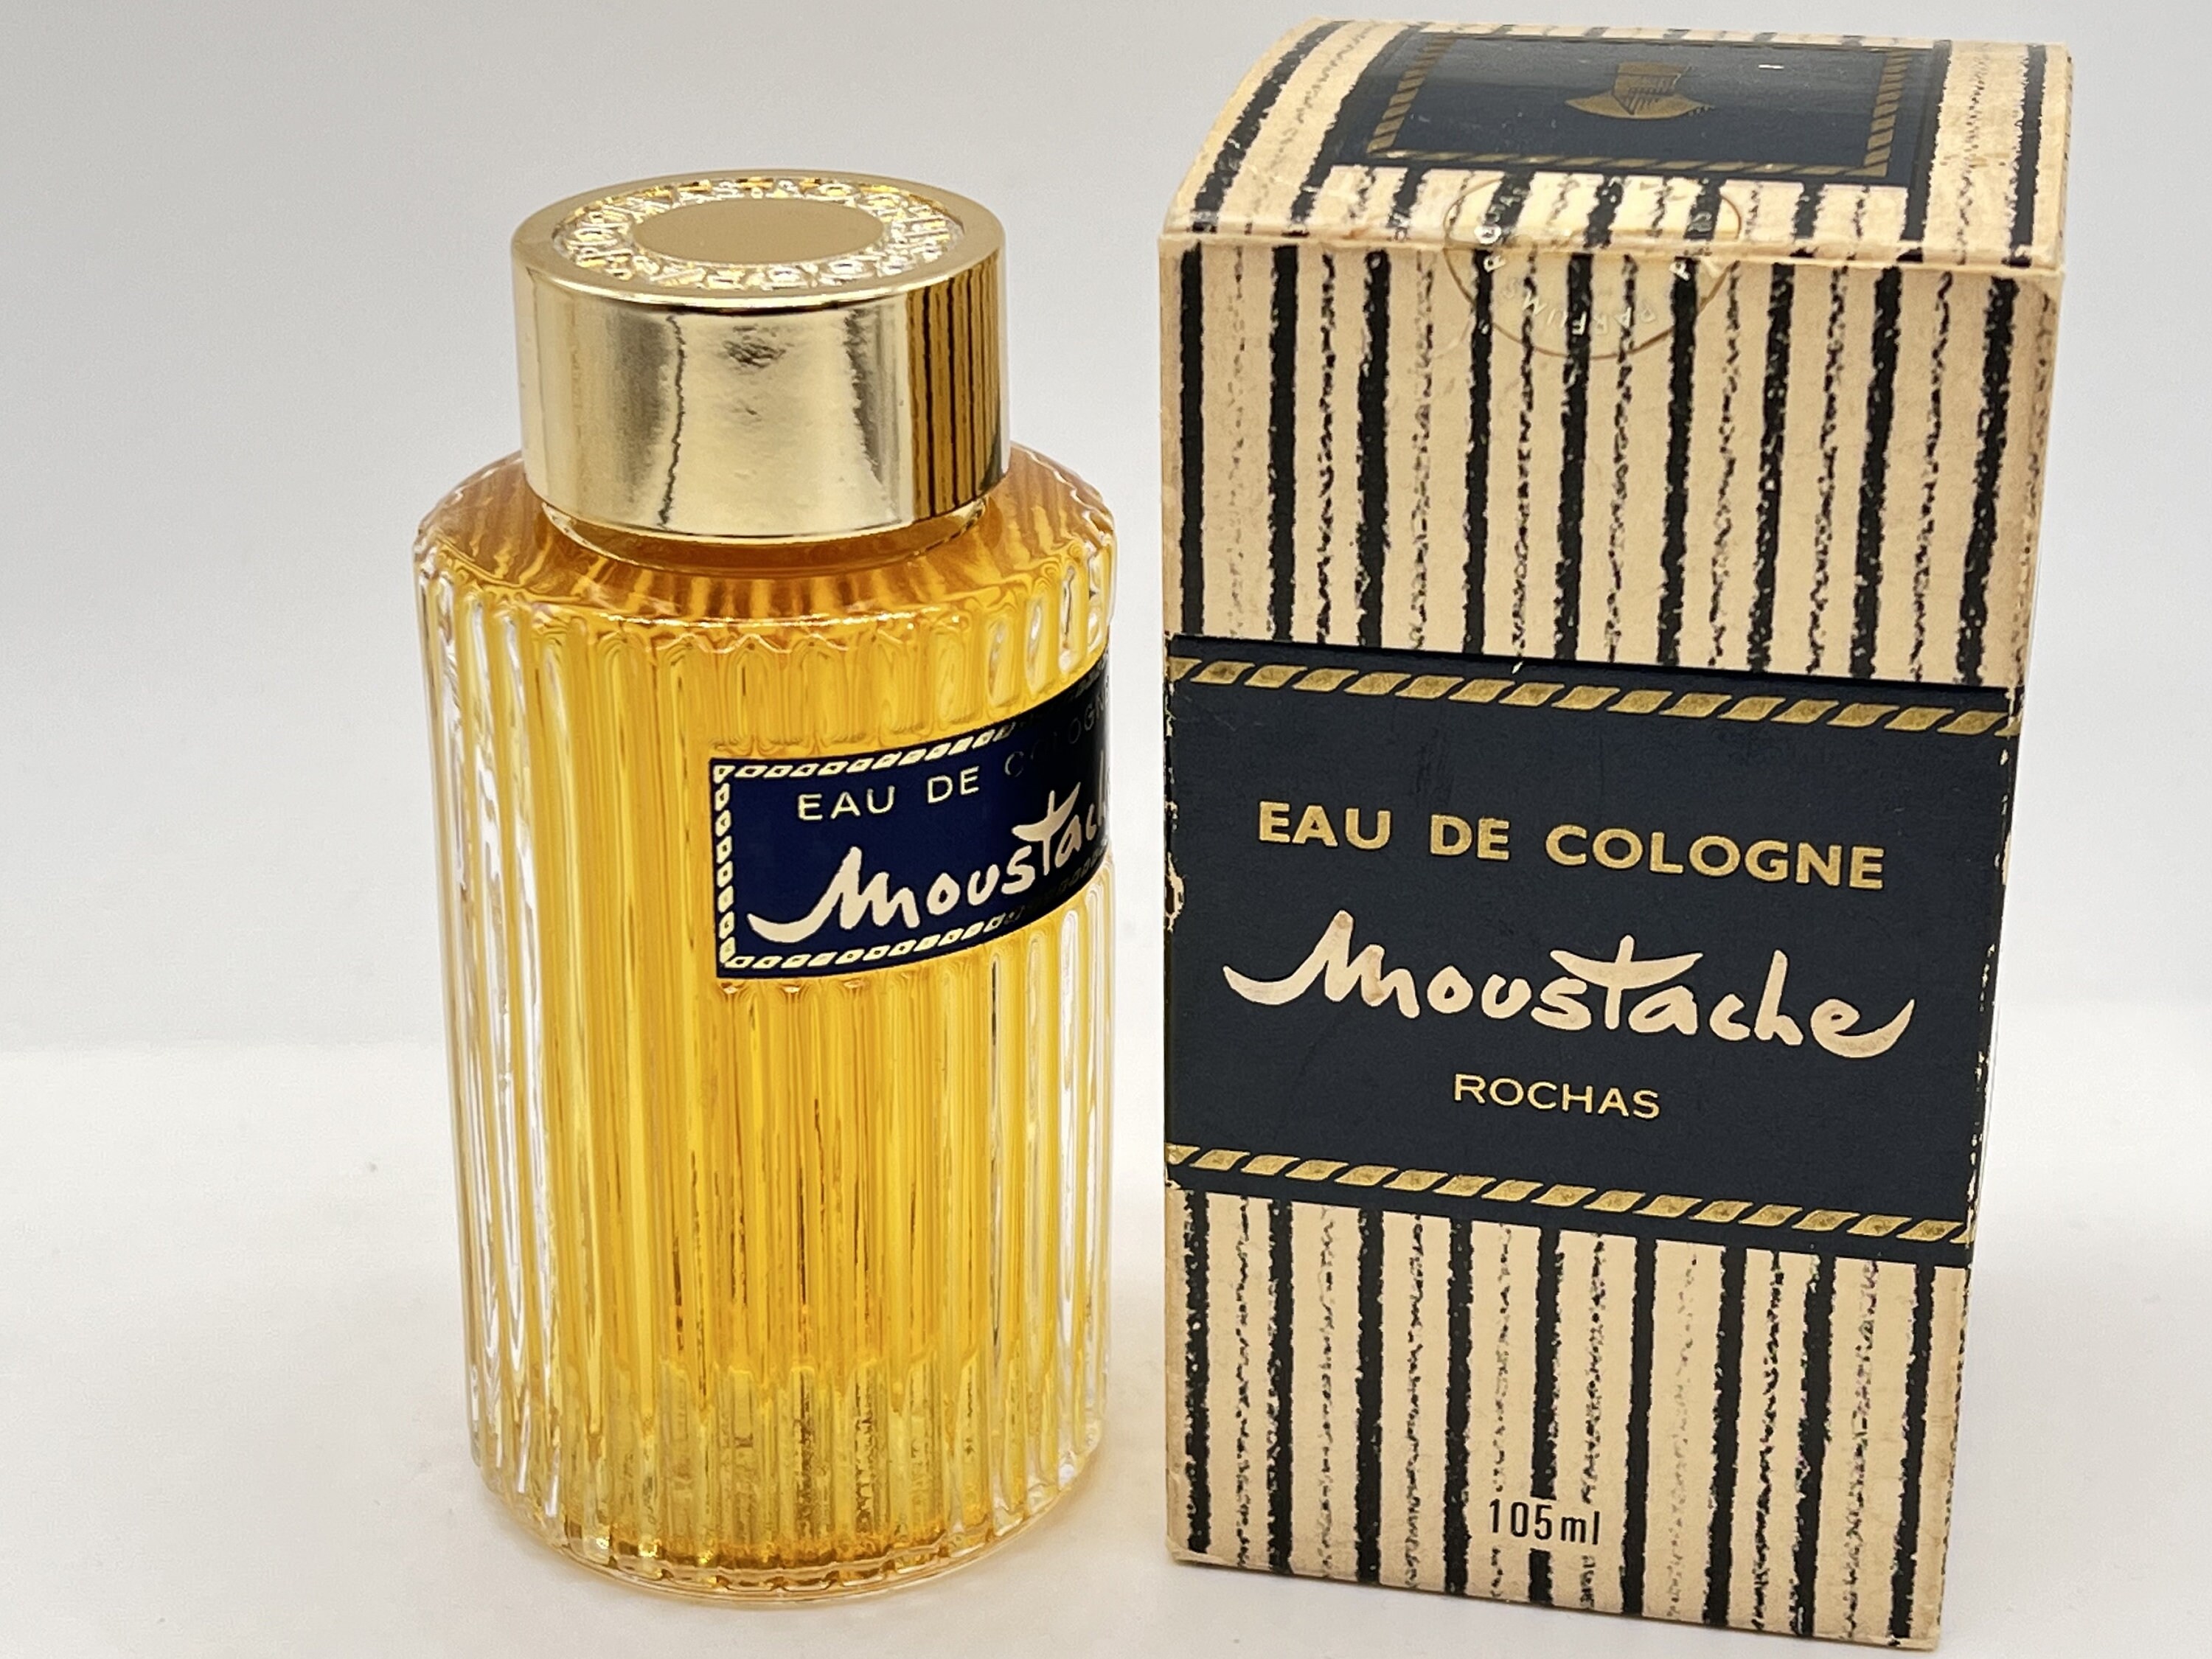 Moustache Original 1949 Rochas cologne - a fragrance for men 2018